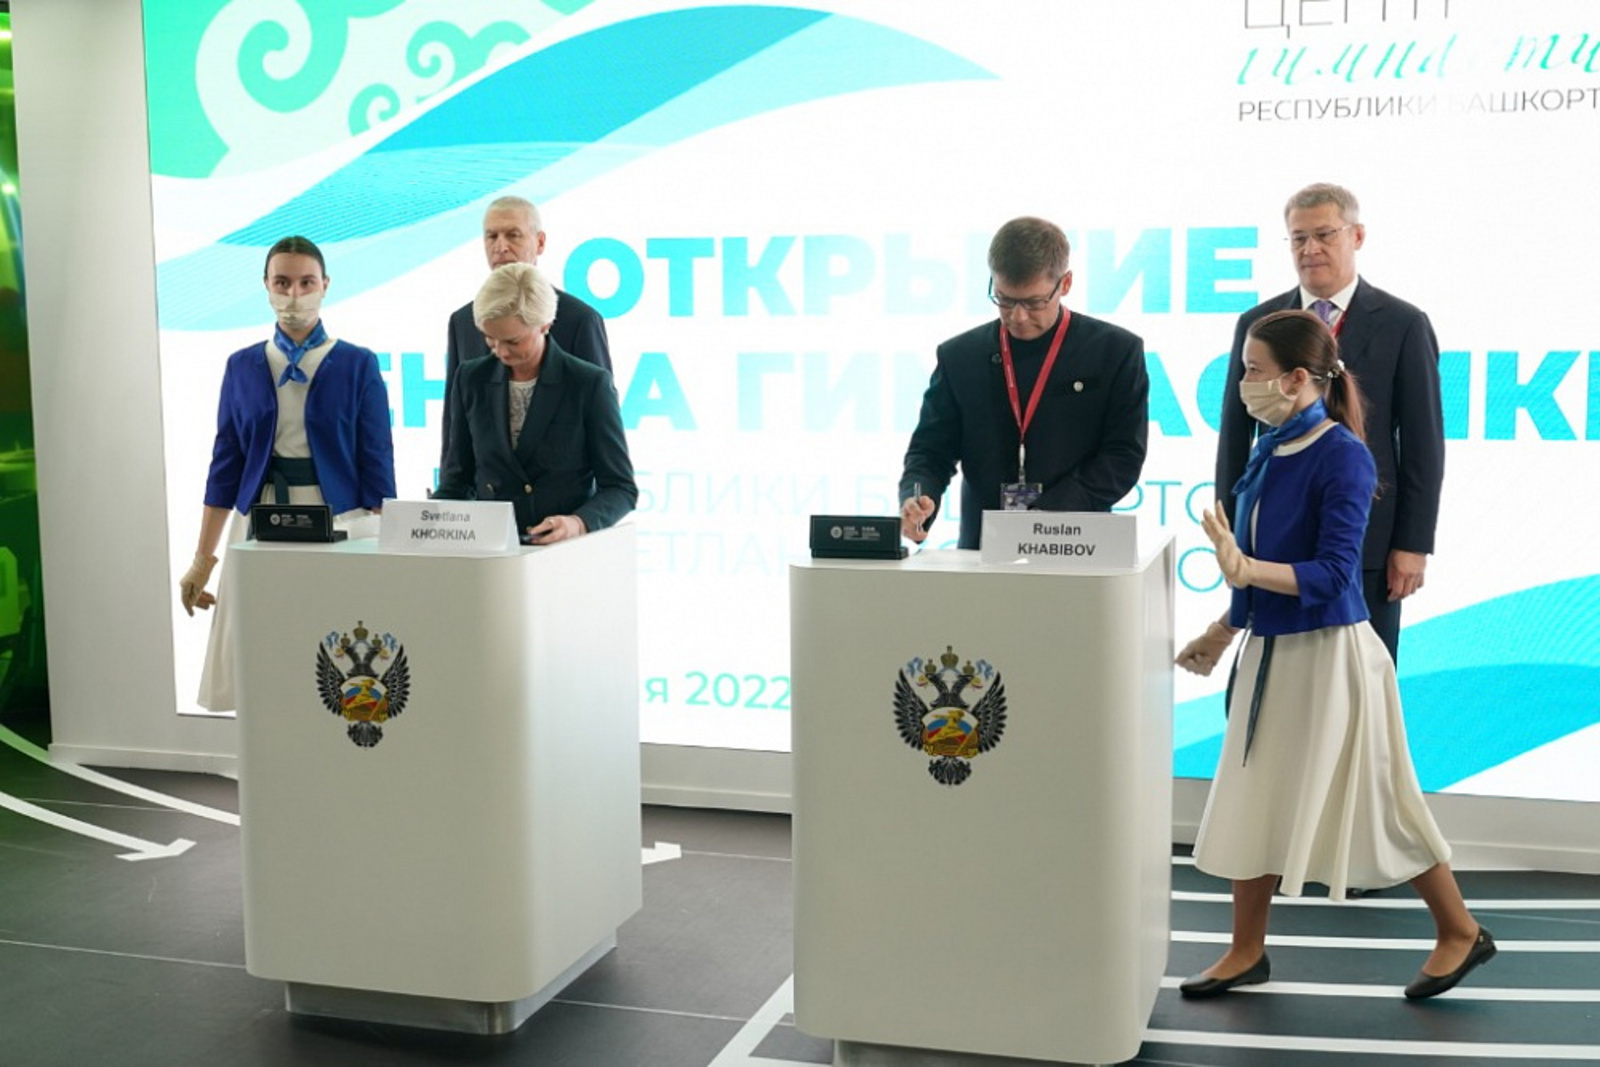 Олимпийская чемпионка Светлана Хоркина будет поддерживать развитие спортивной гимнастики в Башкортостане